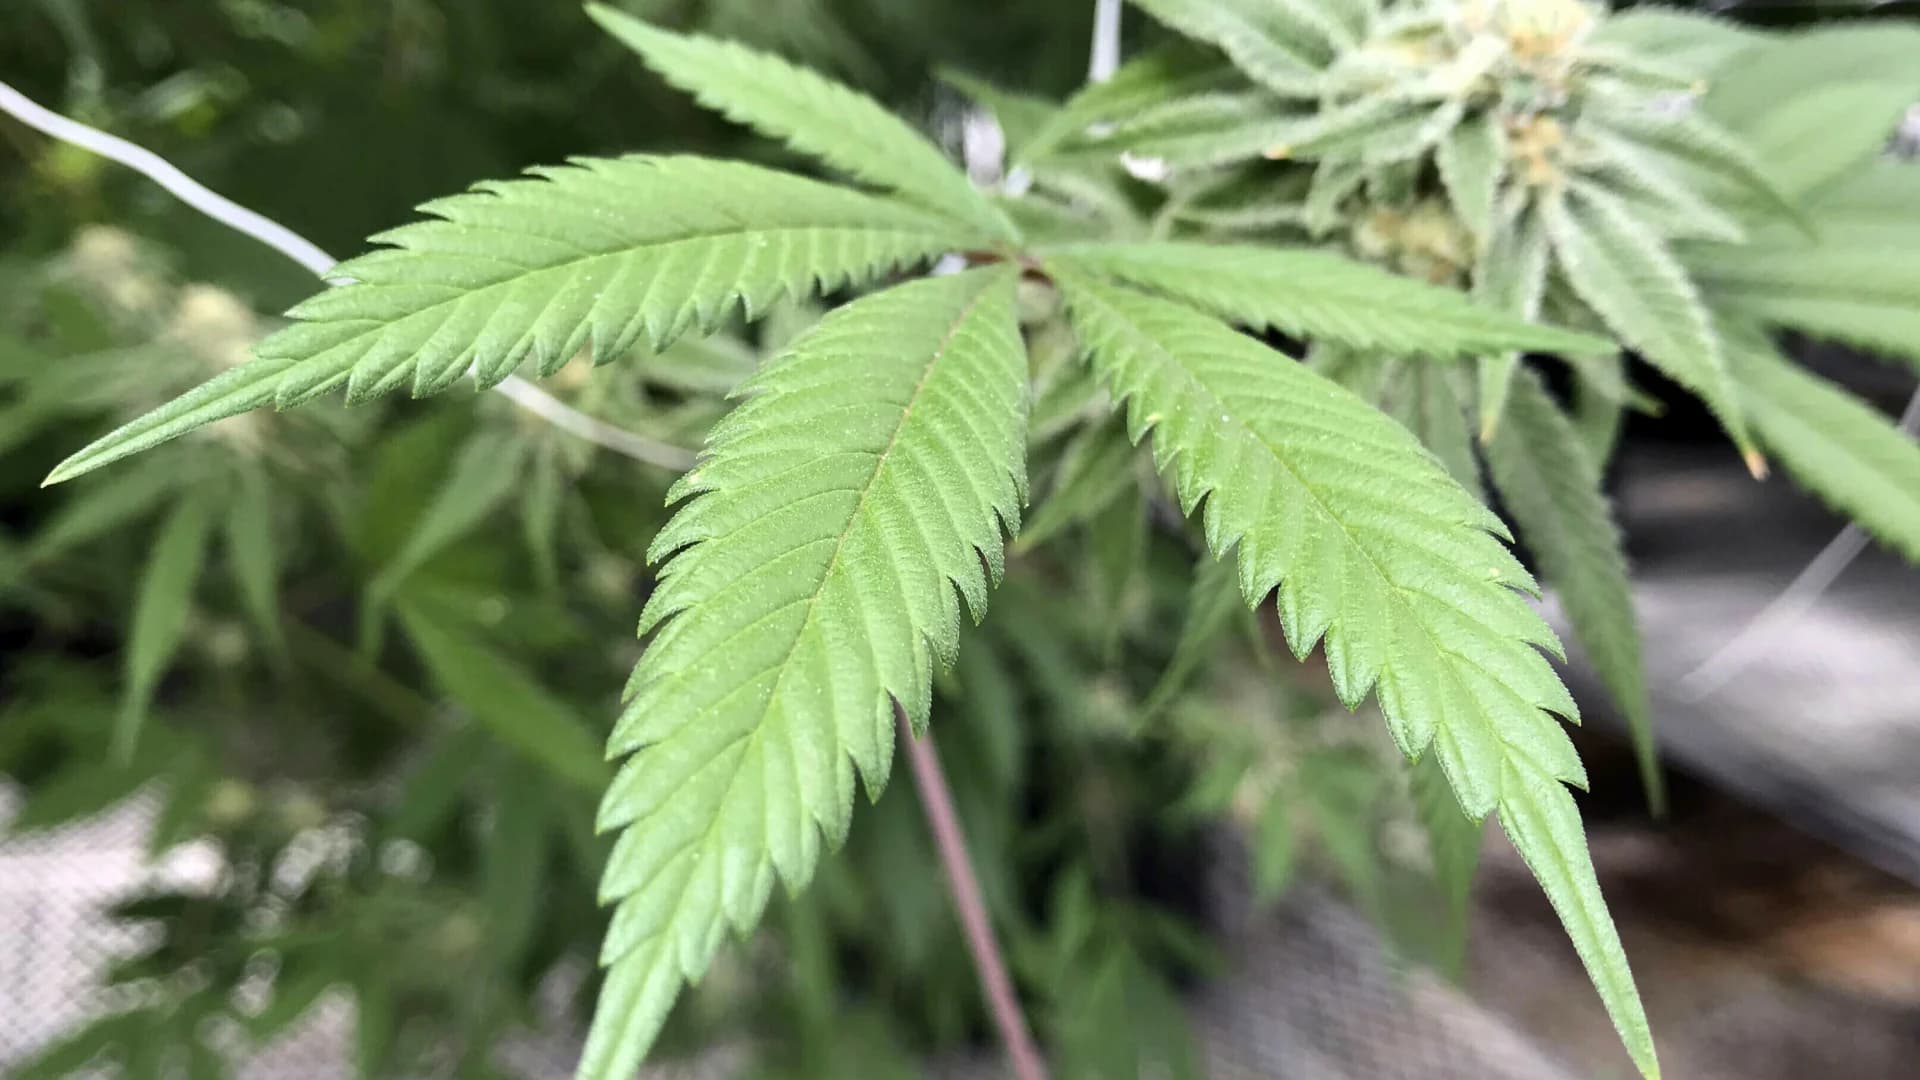 EXPLAINER: New York's legalization of adult-use marijuana 